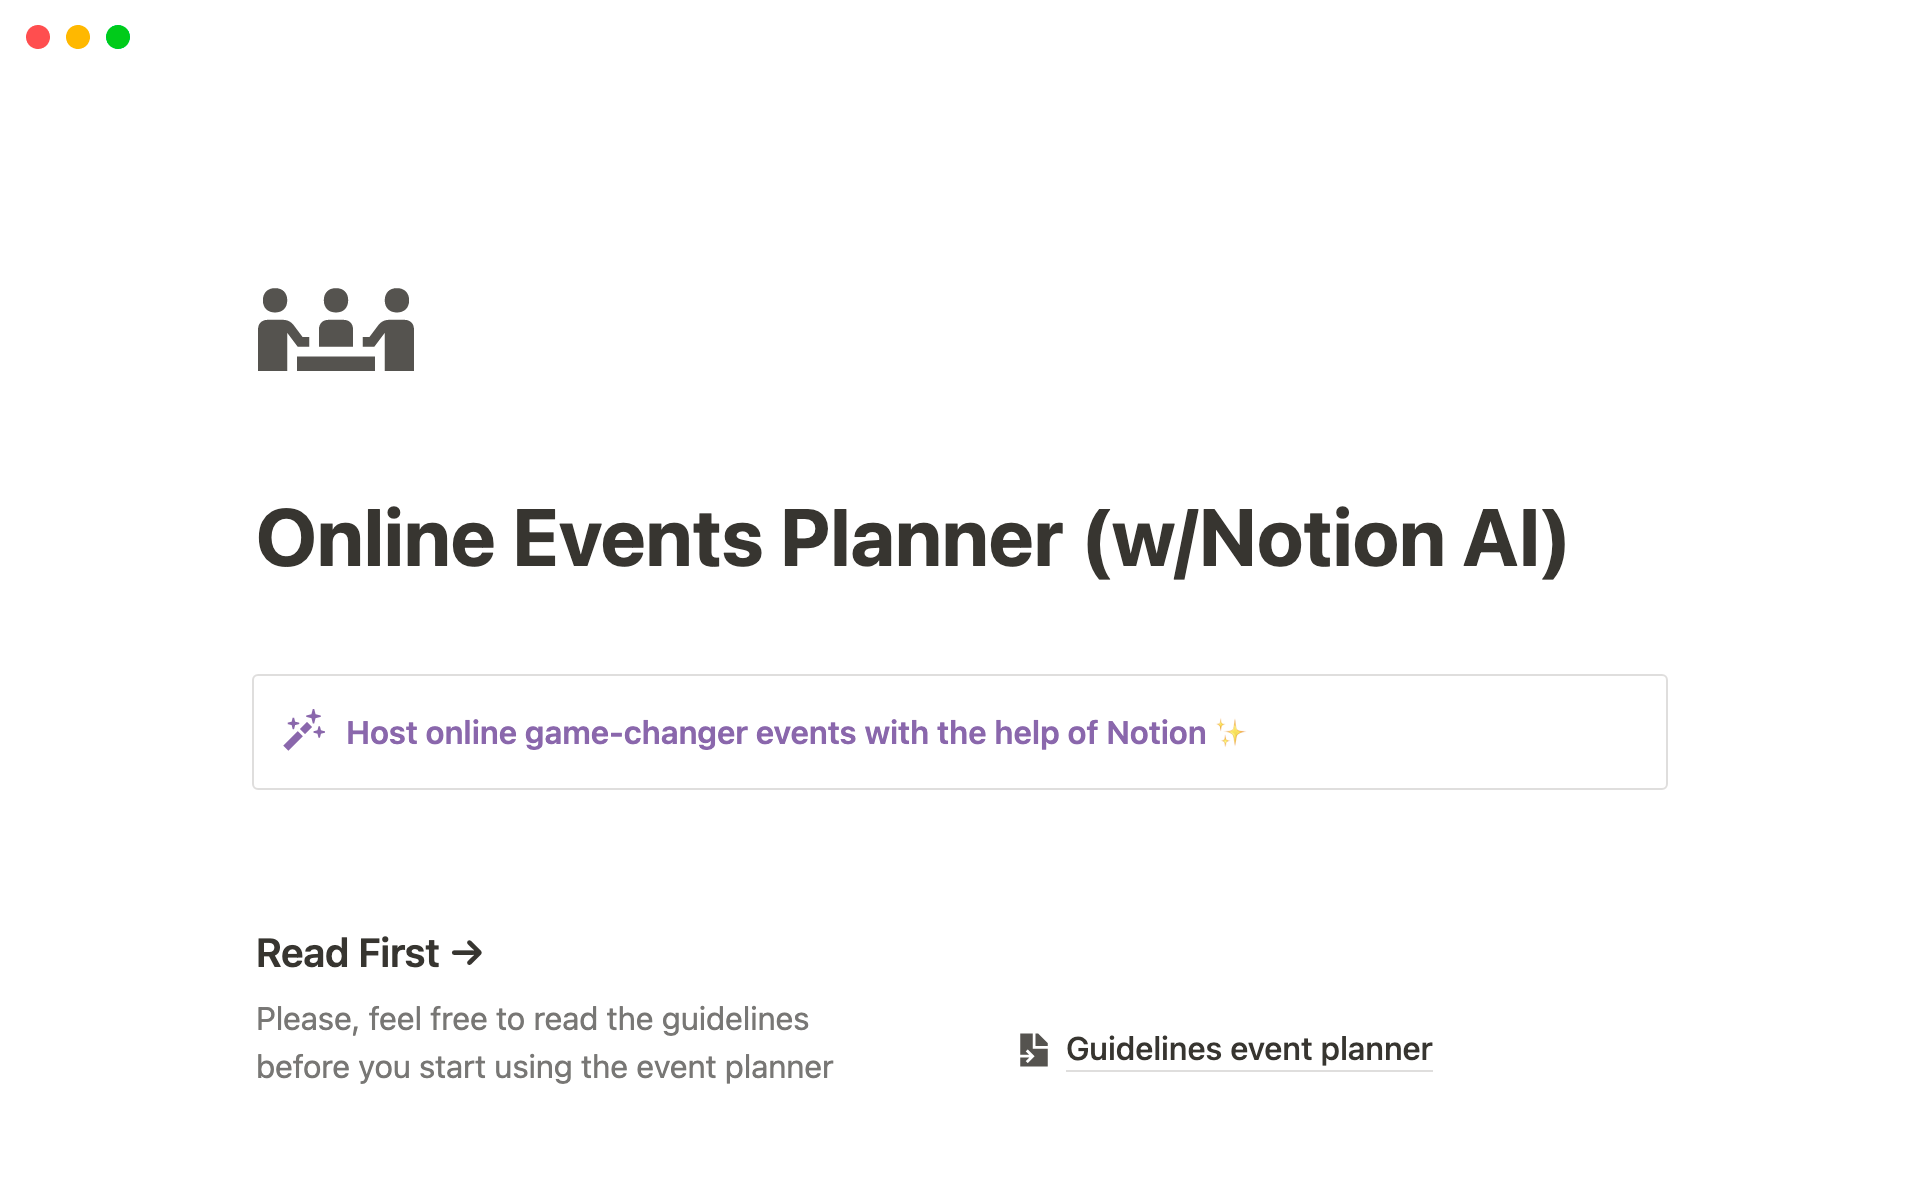 Uma prévia do modelo para Online Events Planner (w/ Notion AI)